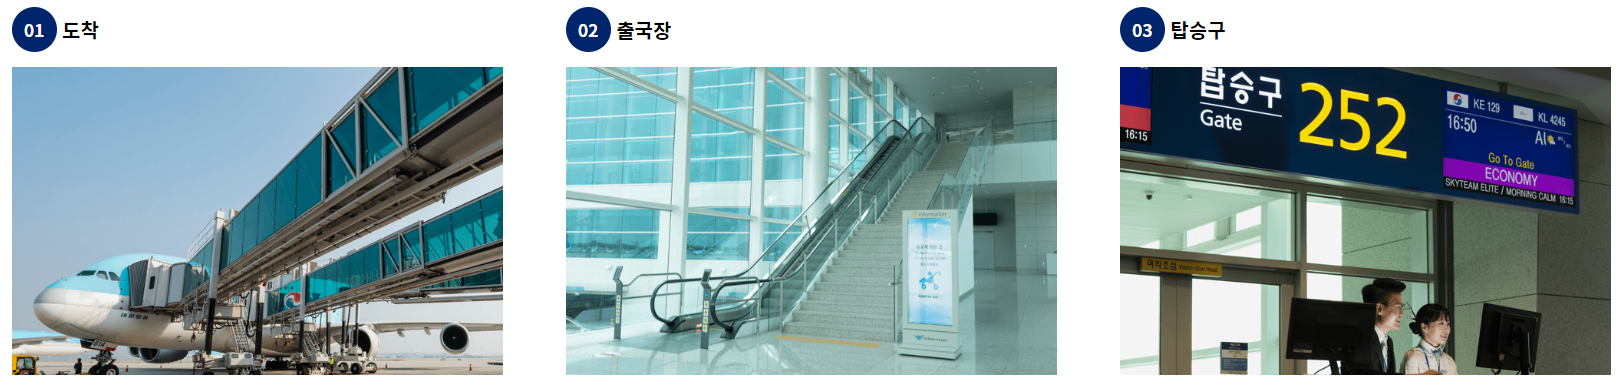 인천공항에서 김해공항 환승하는 방법